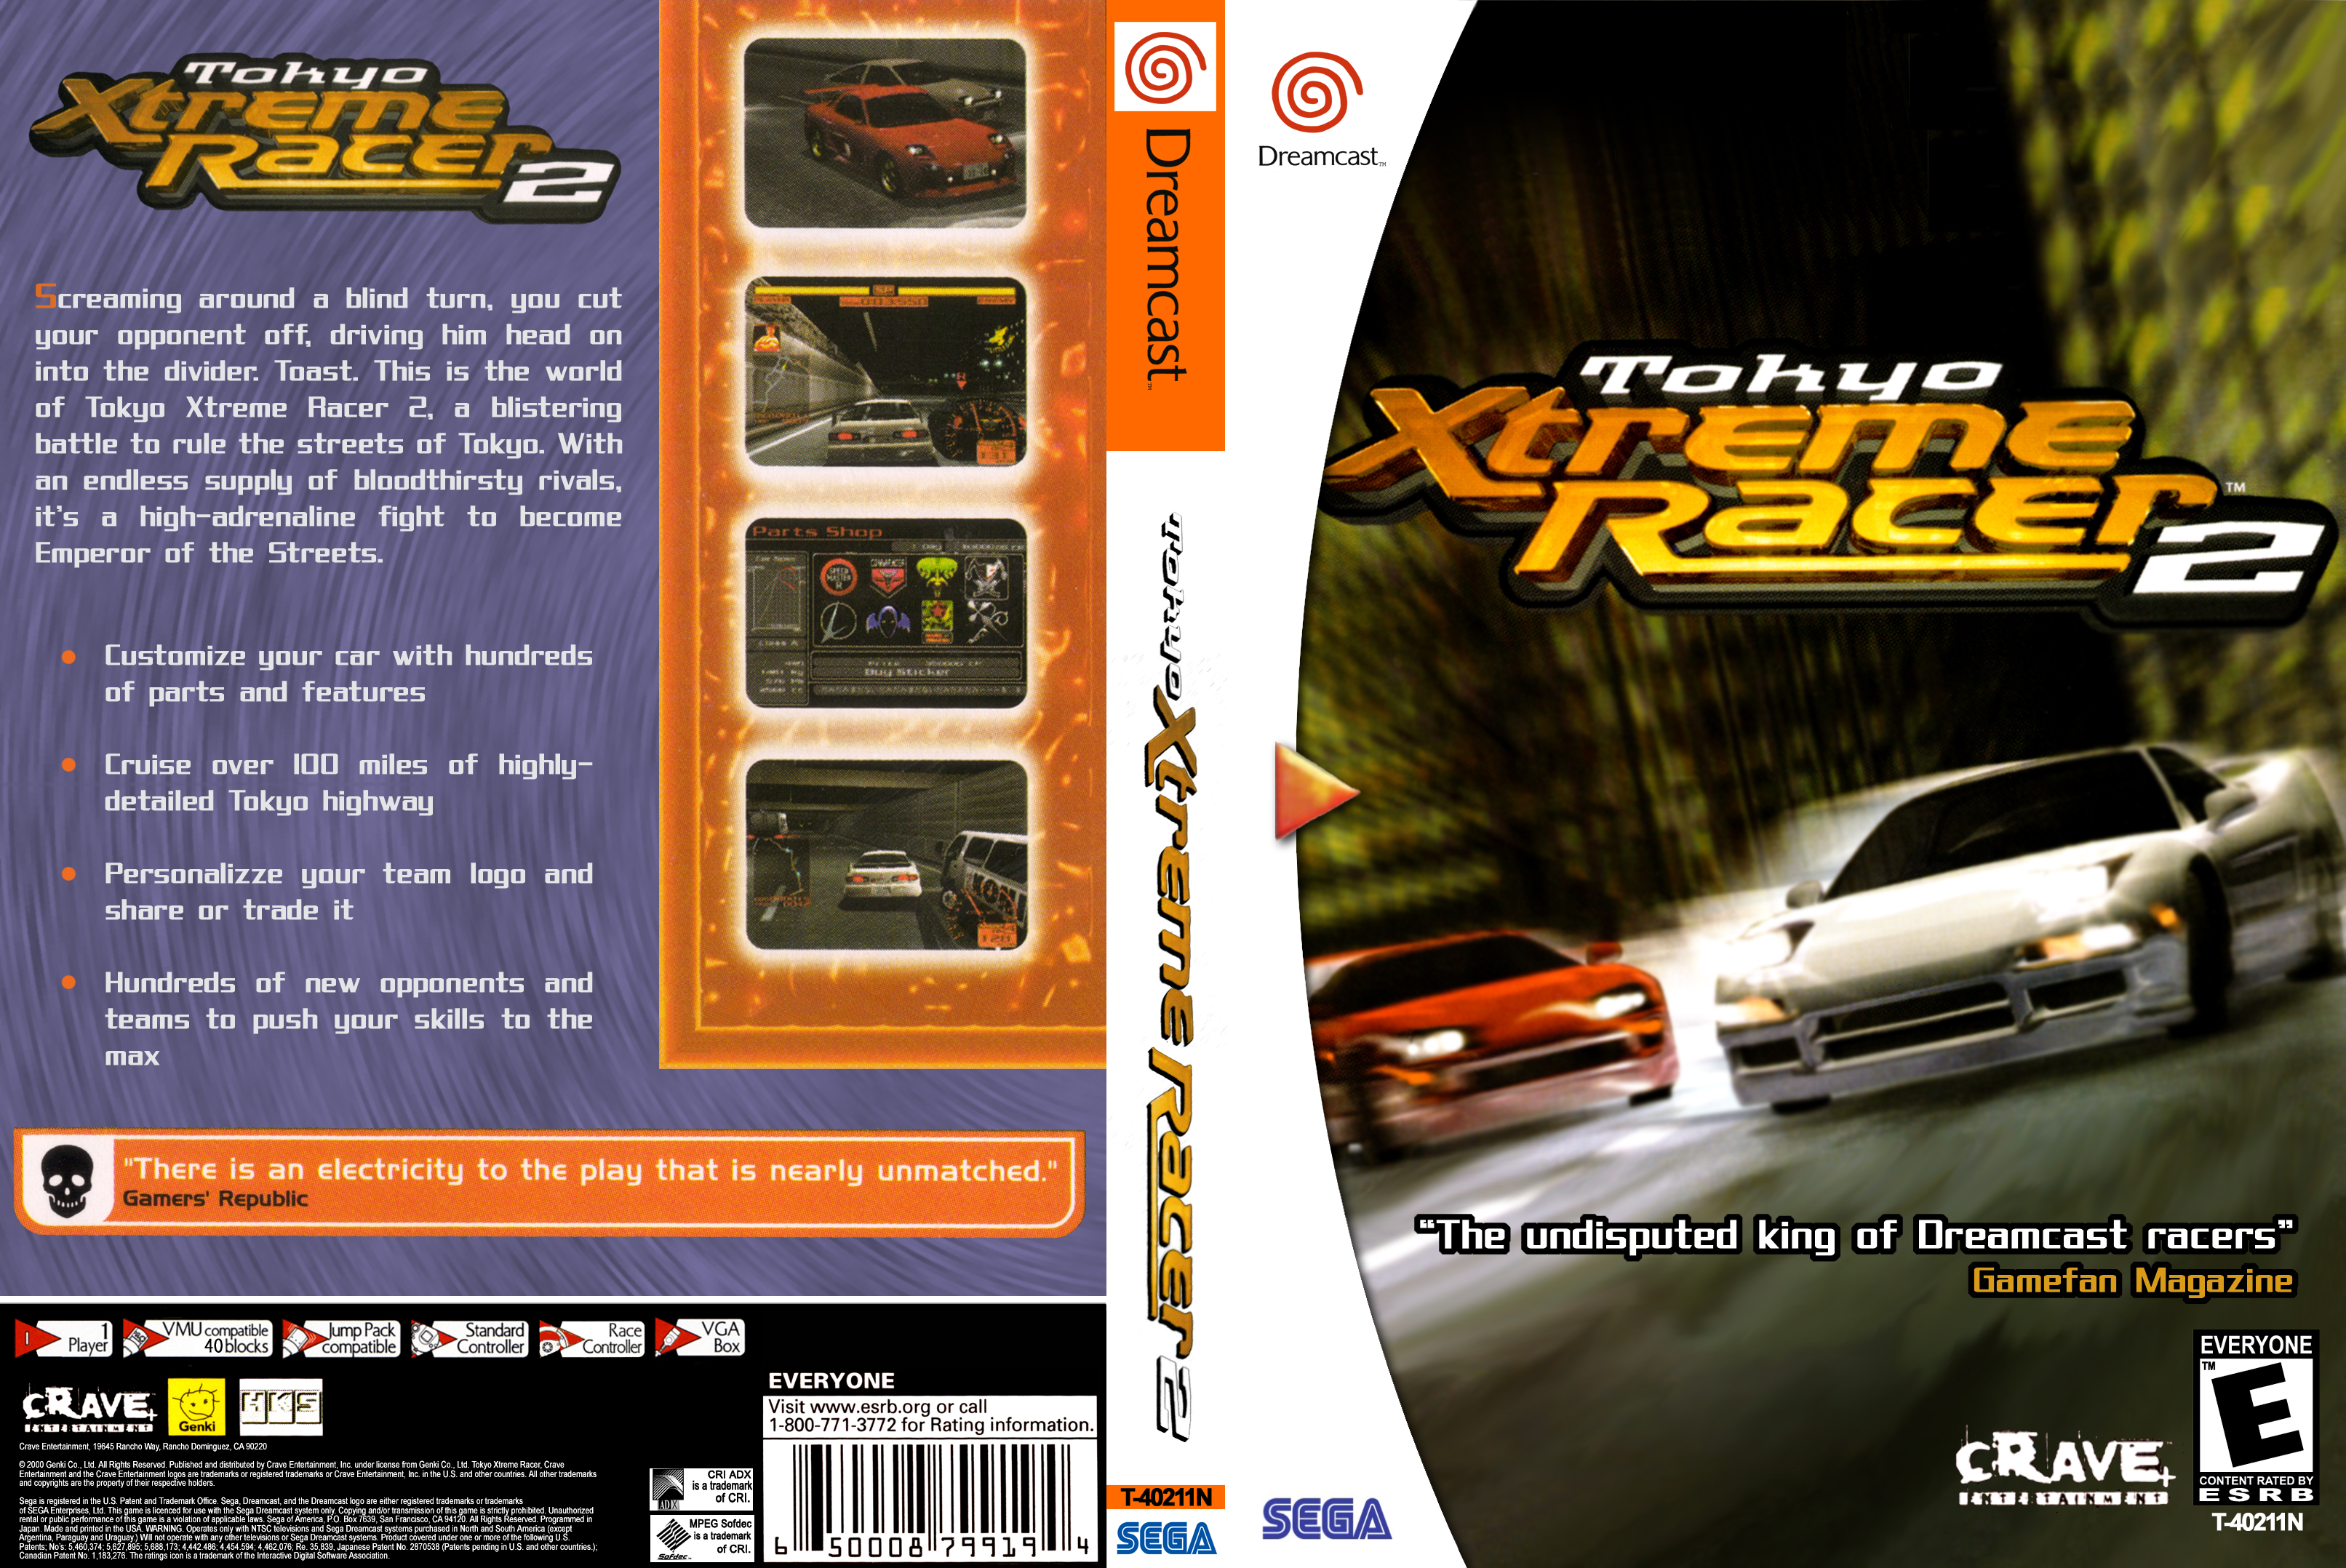 Tokey Xtreme Racer 2